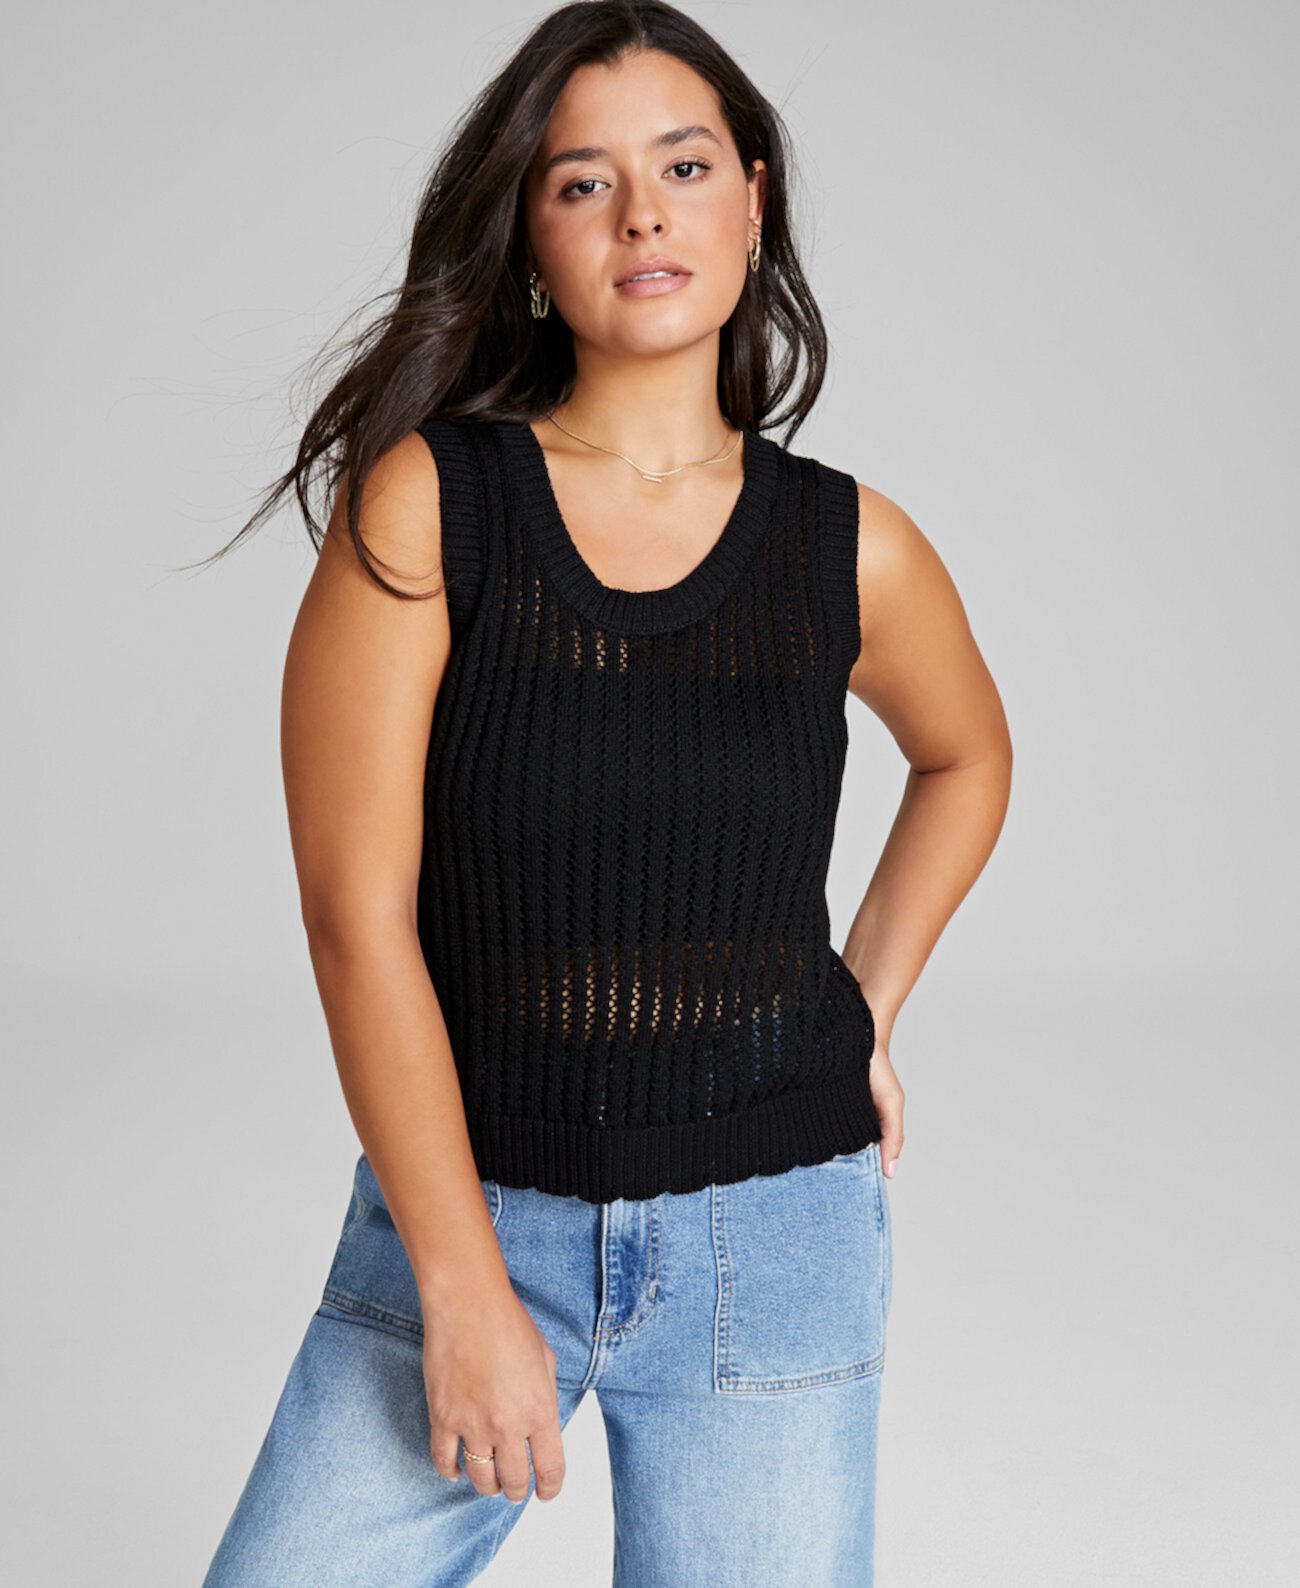 Женский свитер без рукавов с круглым вырезом, созданный для Macy's And Now This